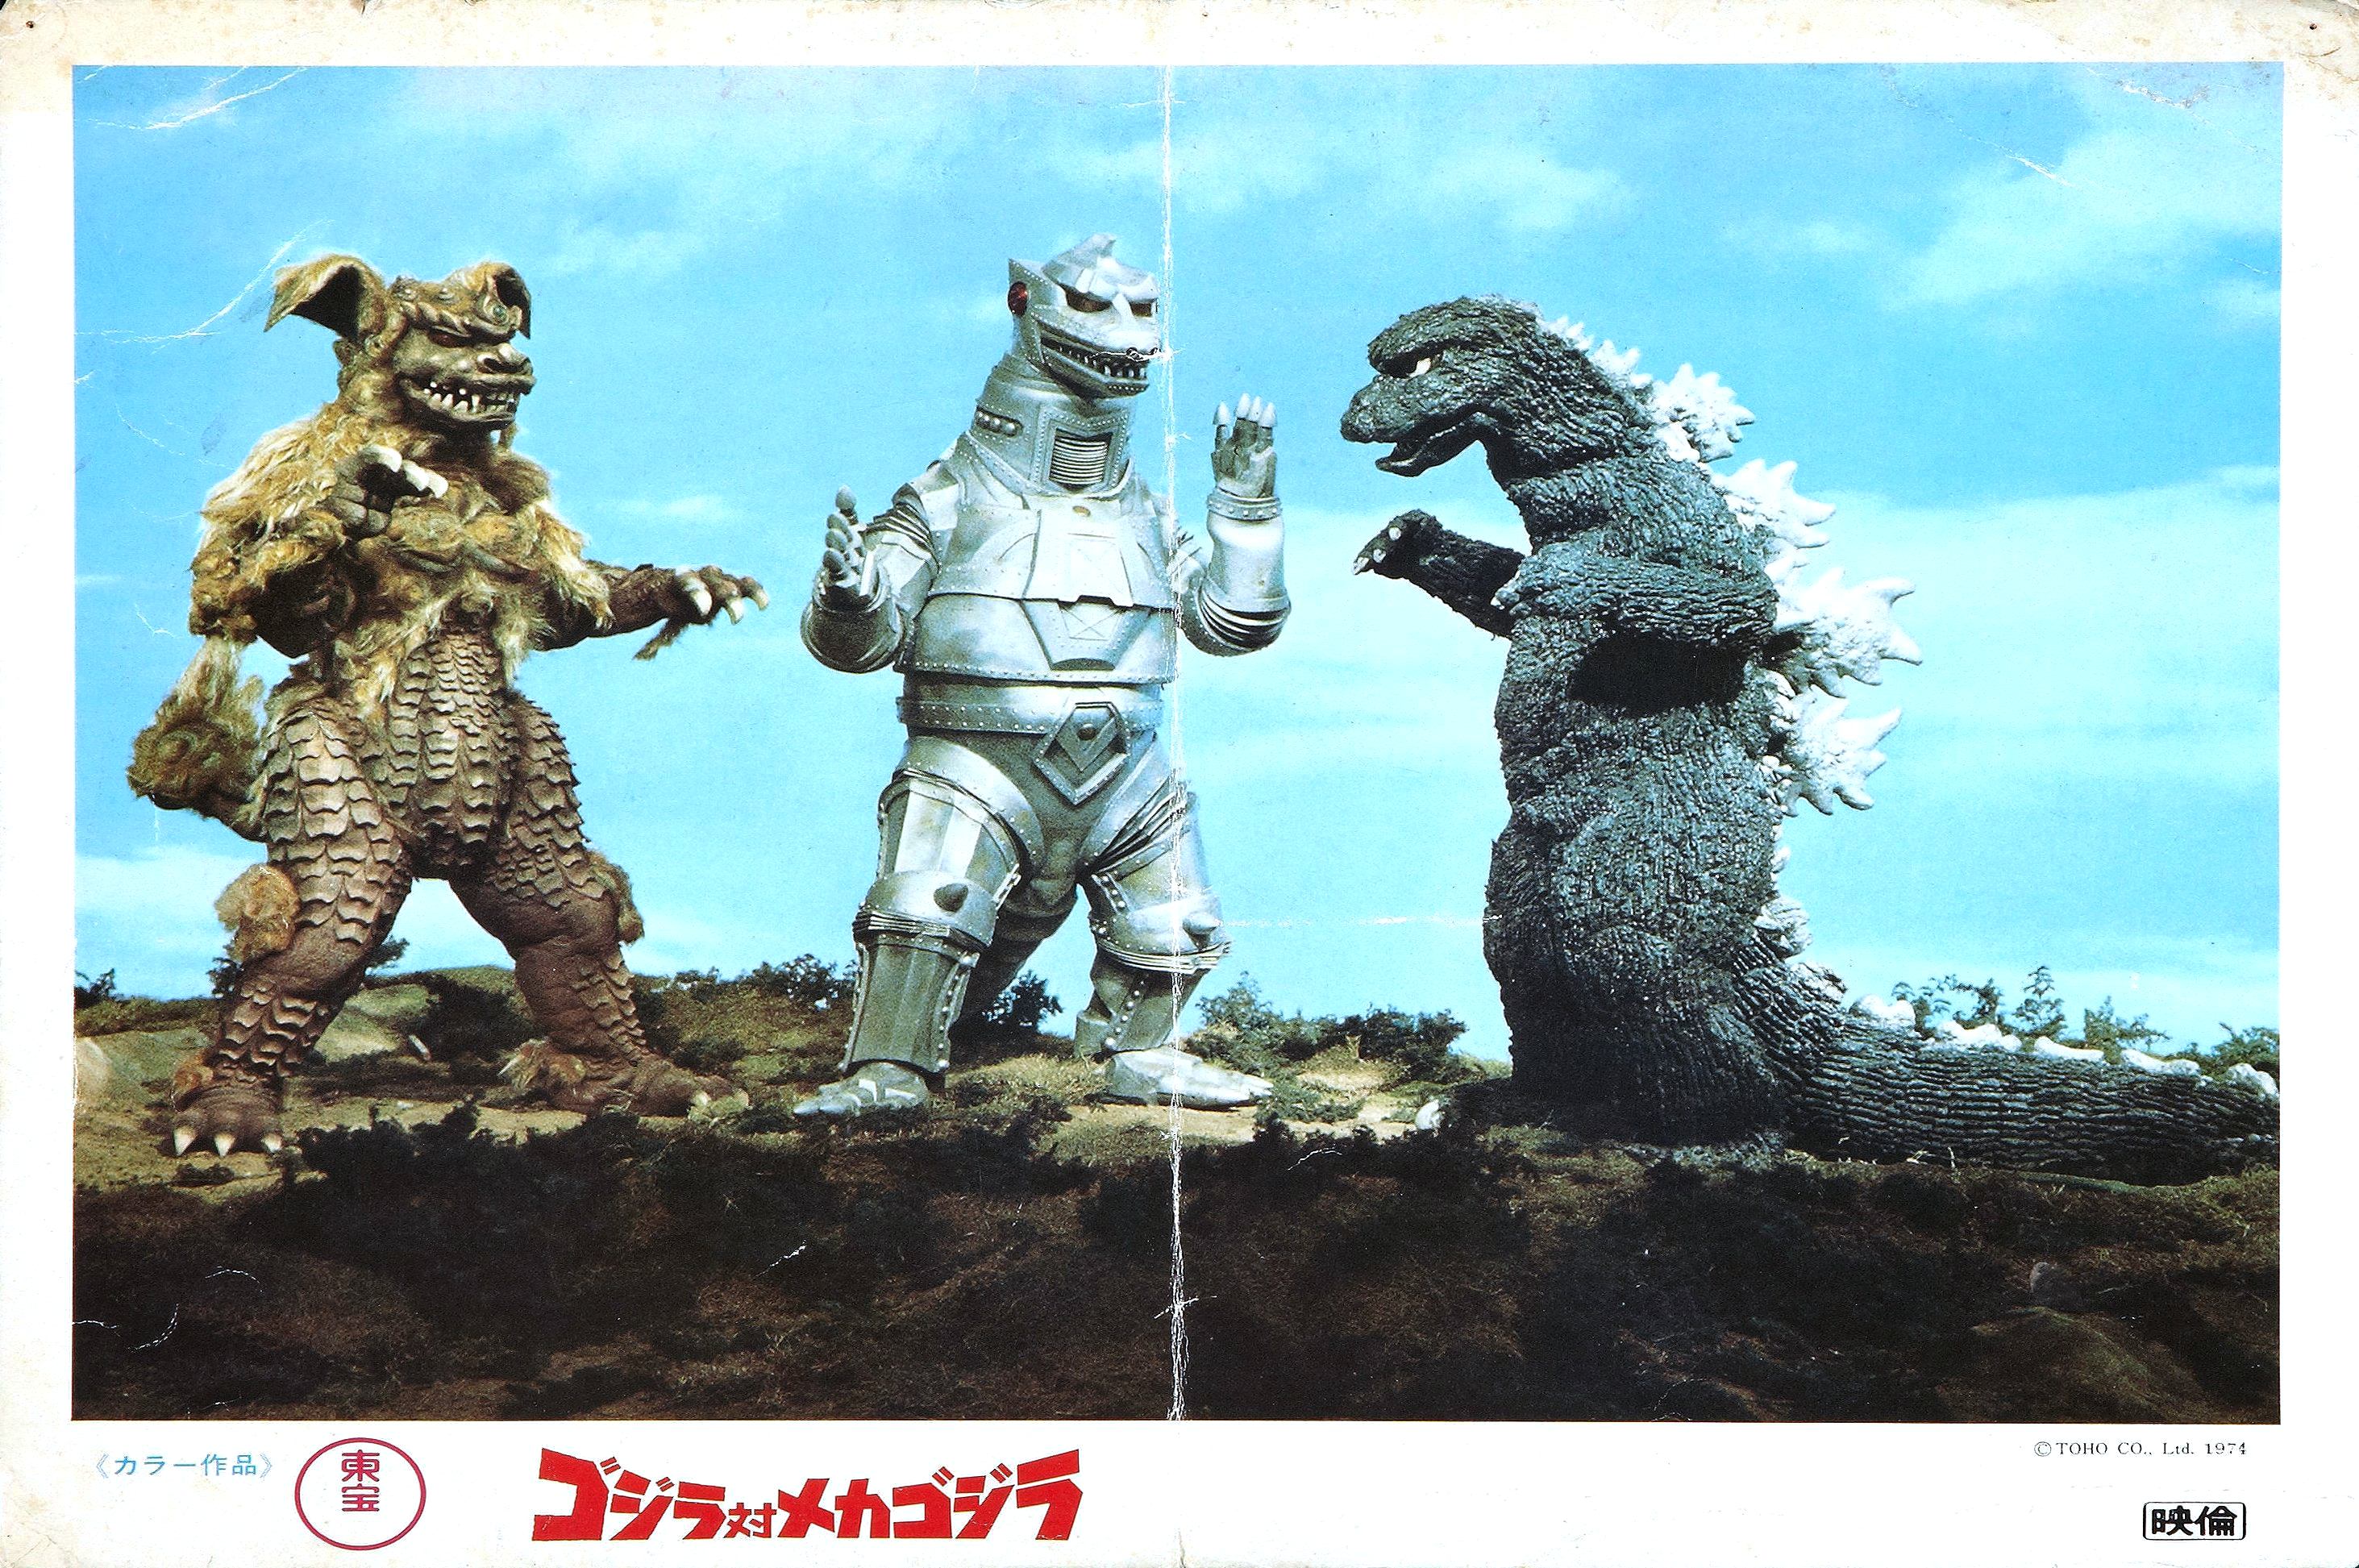 Godzilla Vs. Mechagodzilla HD Wallpaper. Background Image